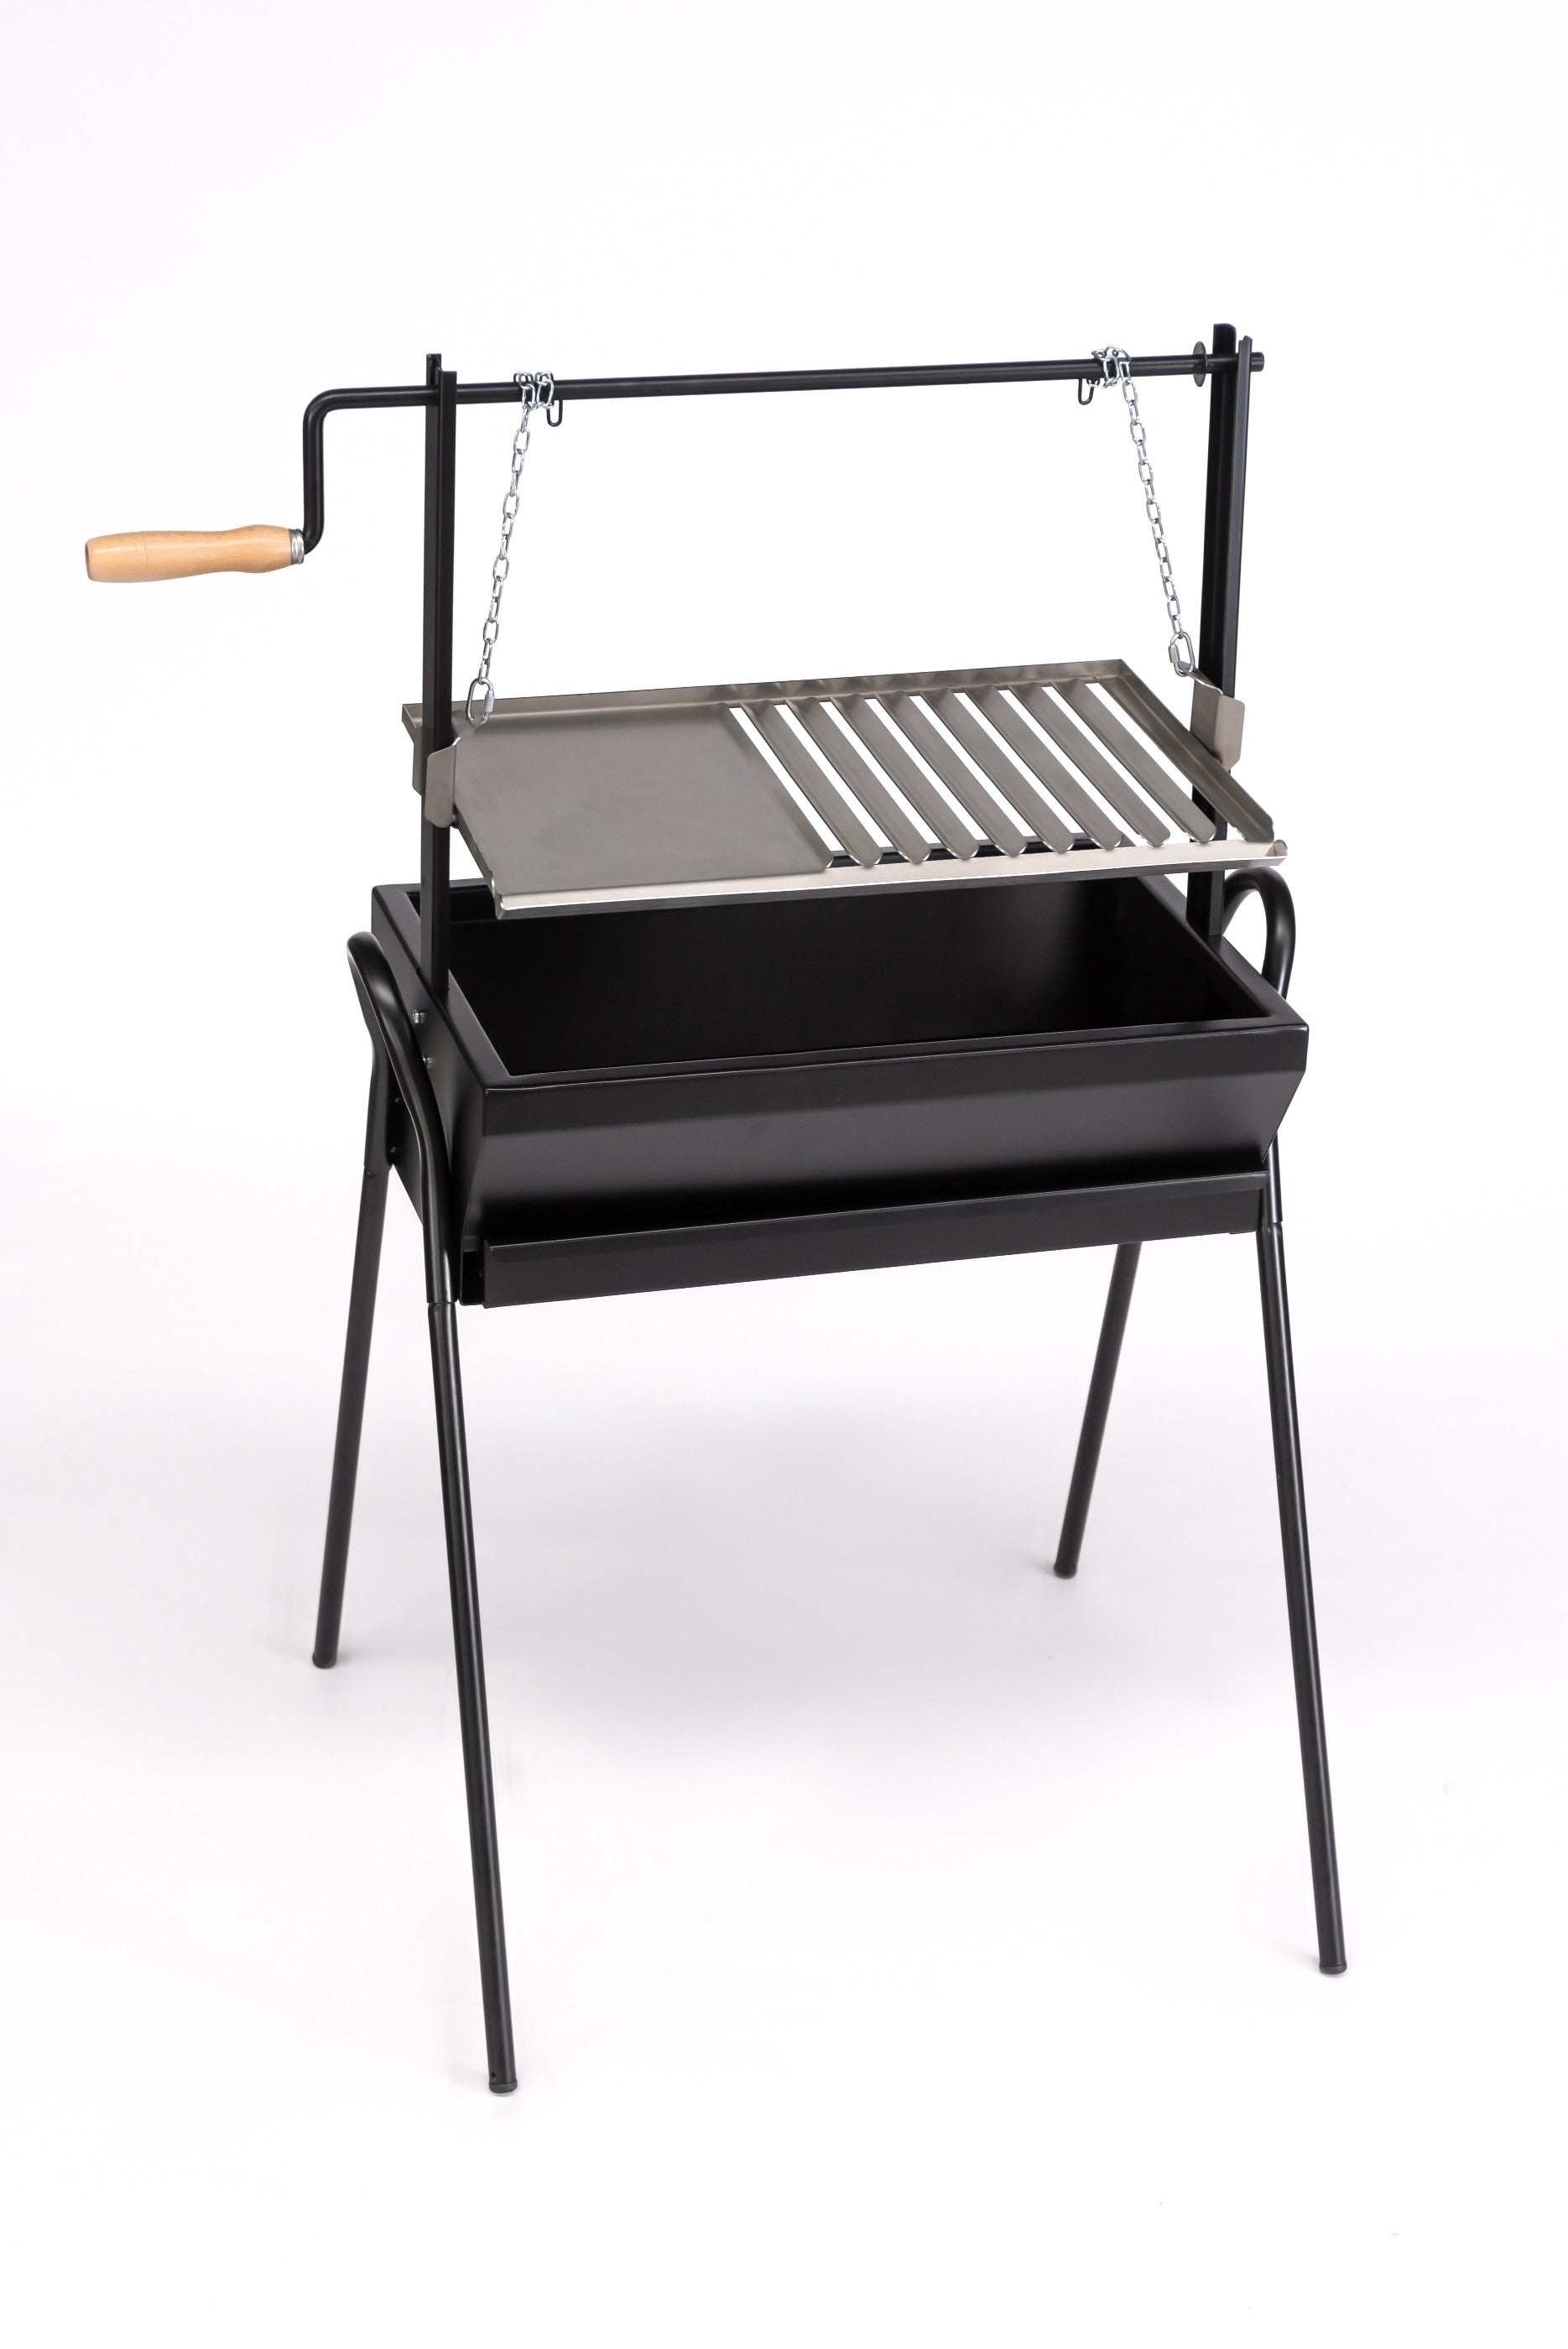 Barbecue / grelhador Argentino 70cm